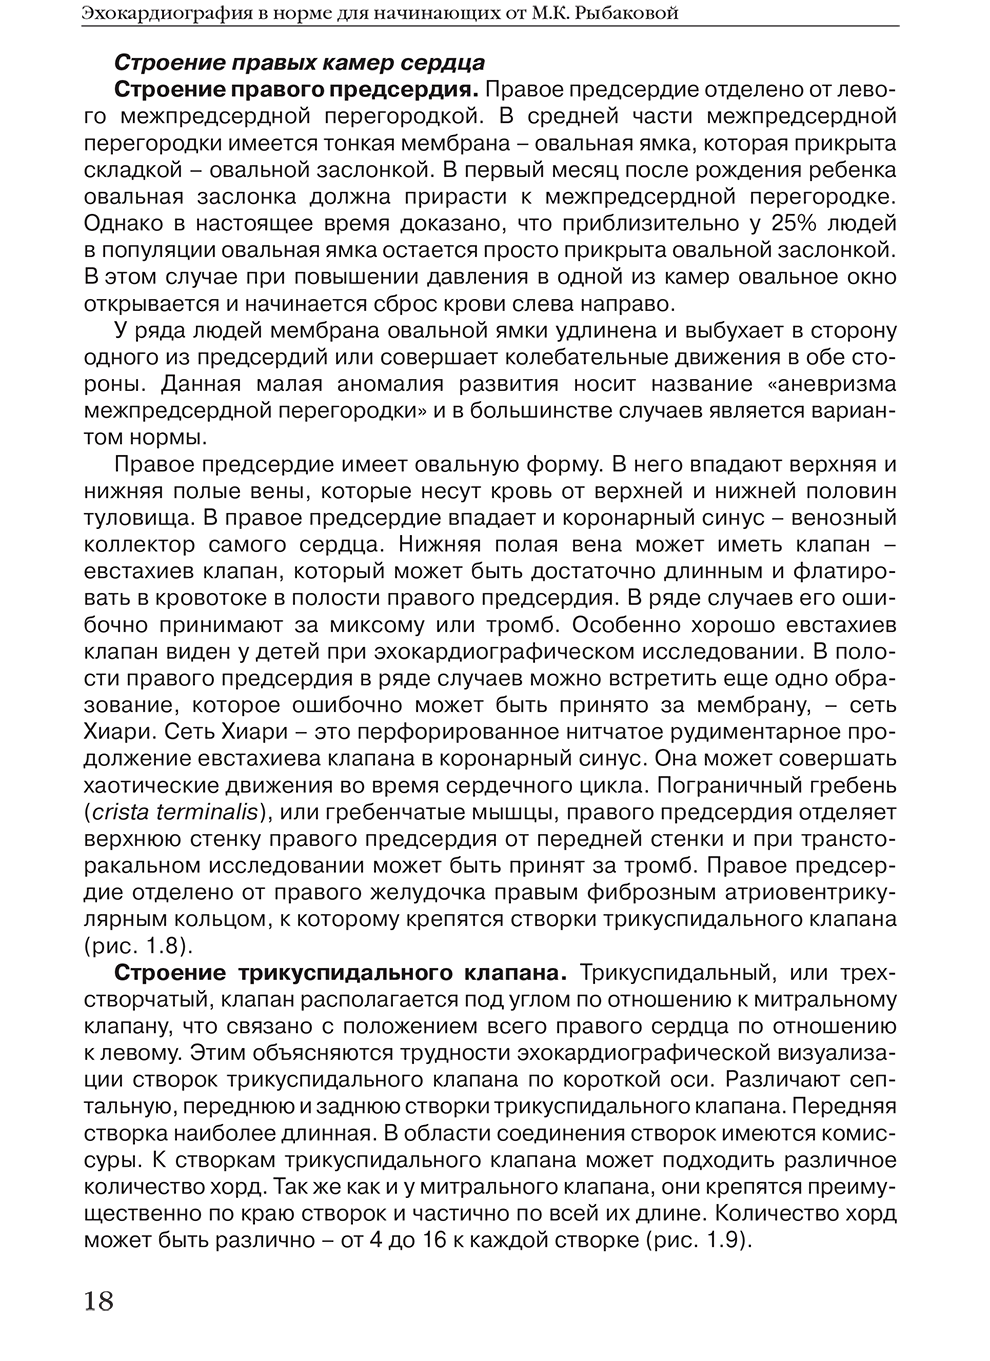 Пример страницы из книги "Эхокардиография в норме для начинающих от Рыбаковой" - М. К. Рыбакова, В. В. Митьков, Д. Г. Балдин